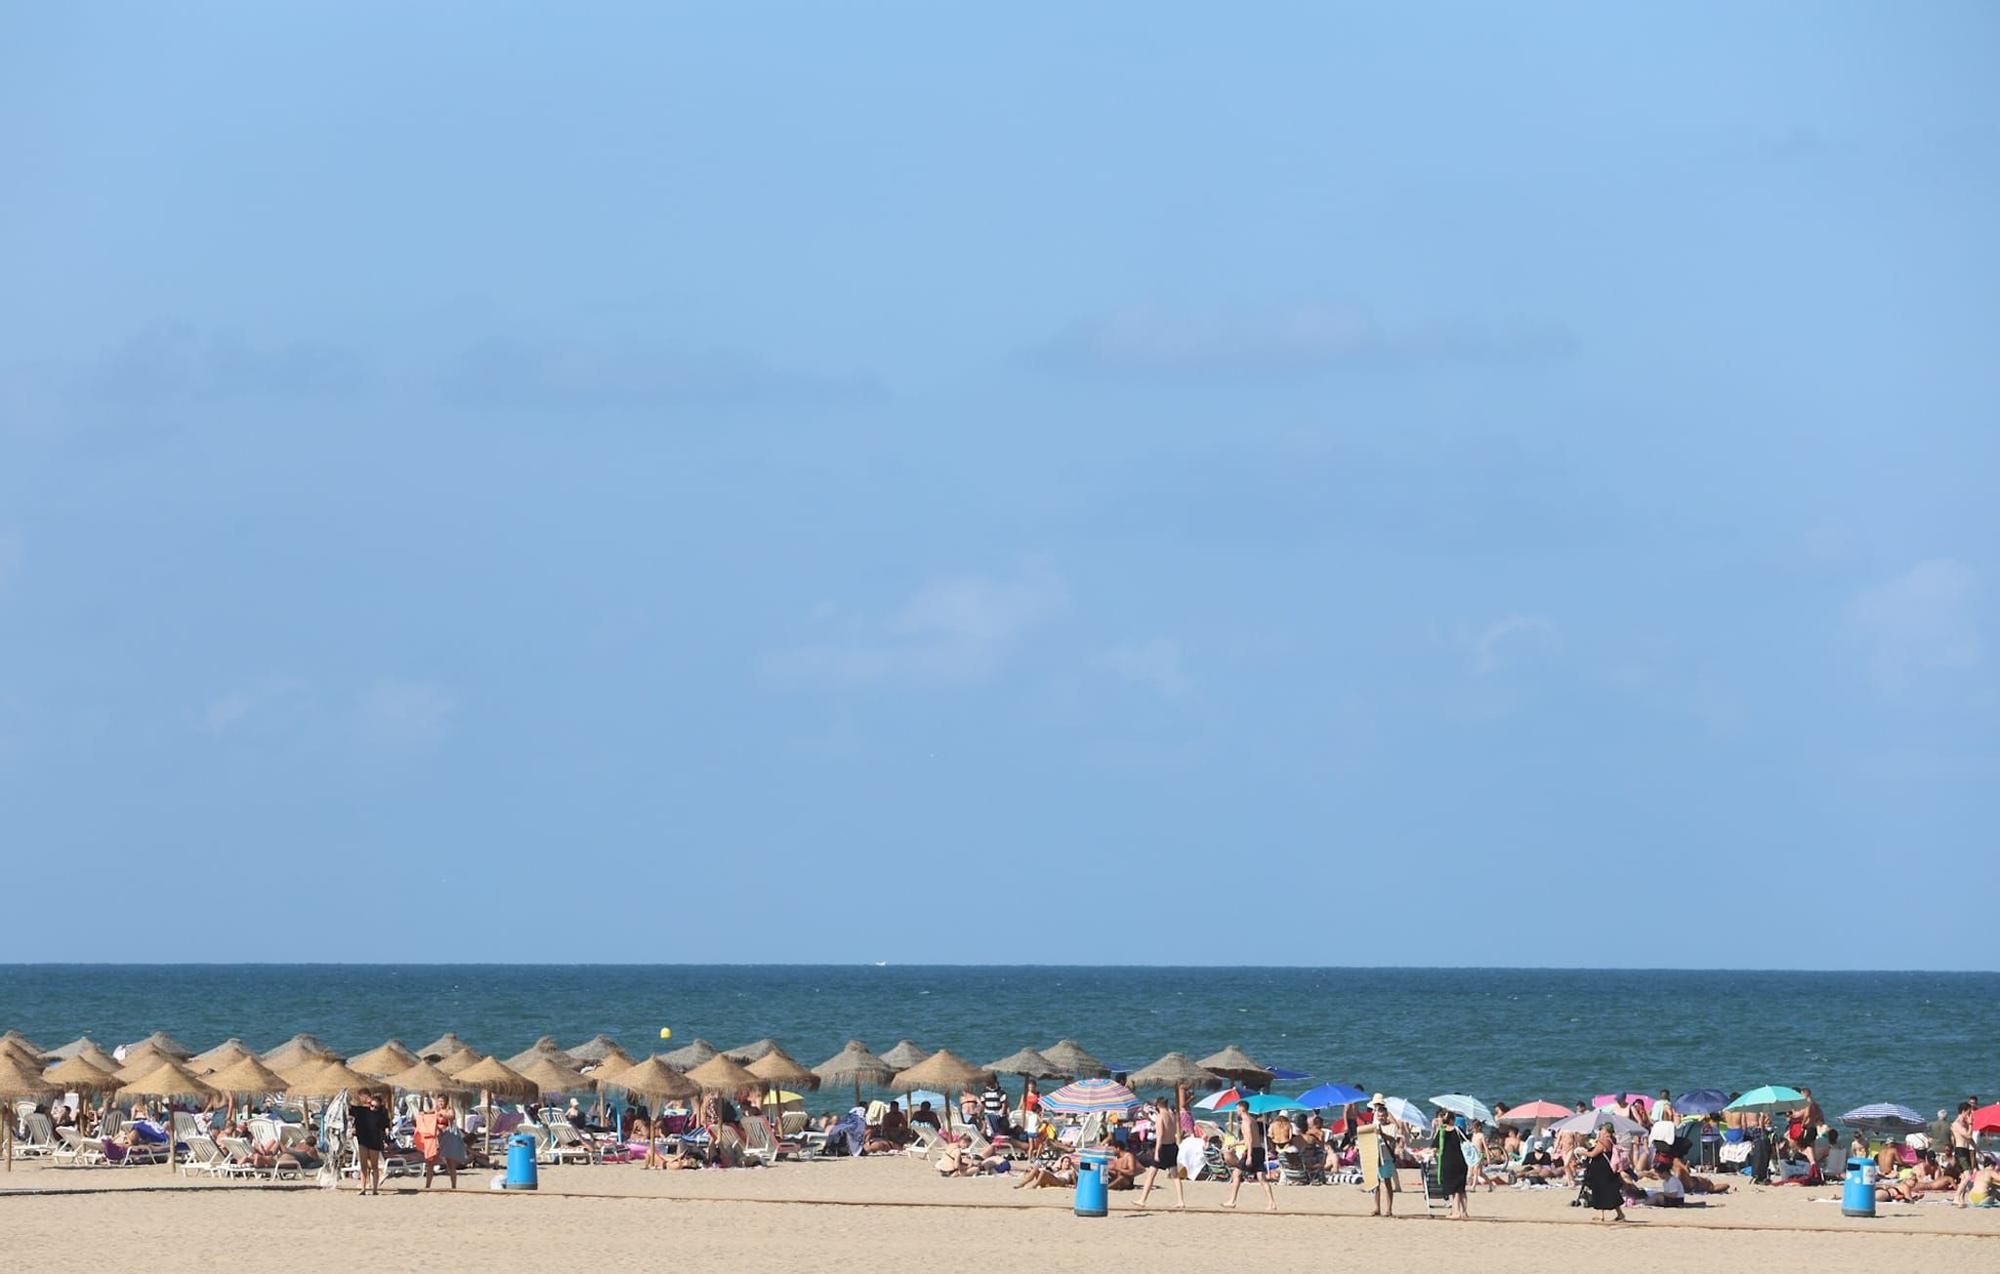 Las playas de València a rebosar el último fin de semana de julio